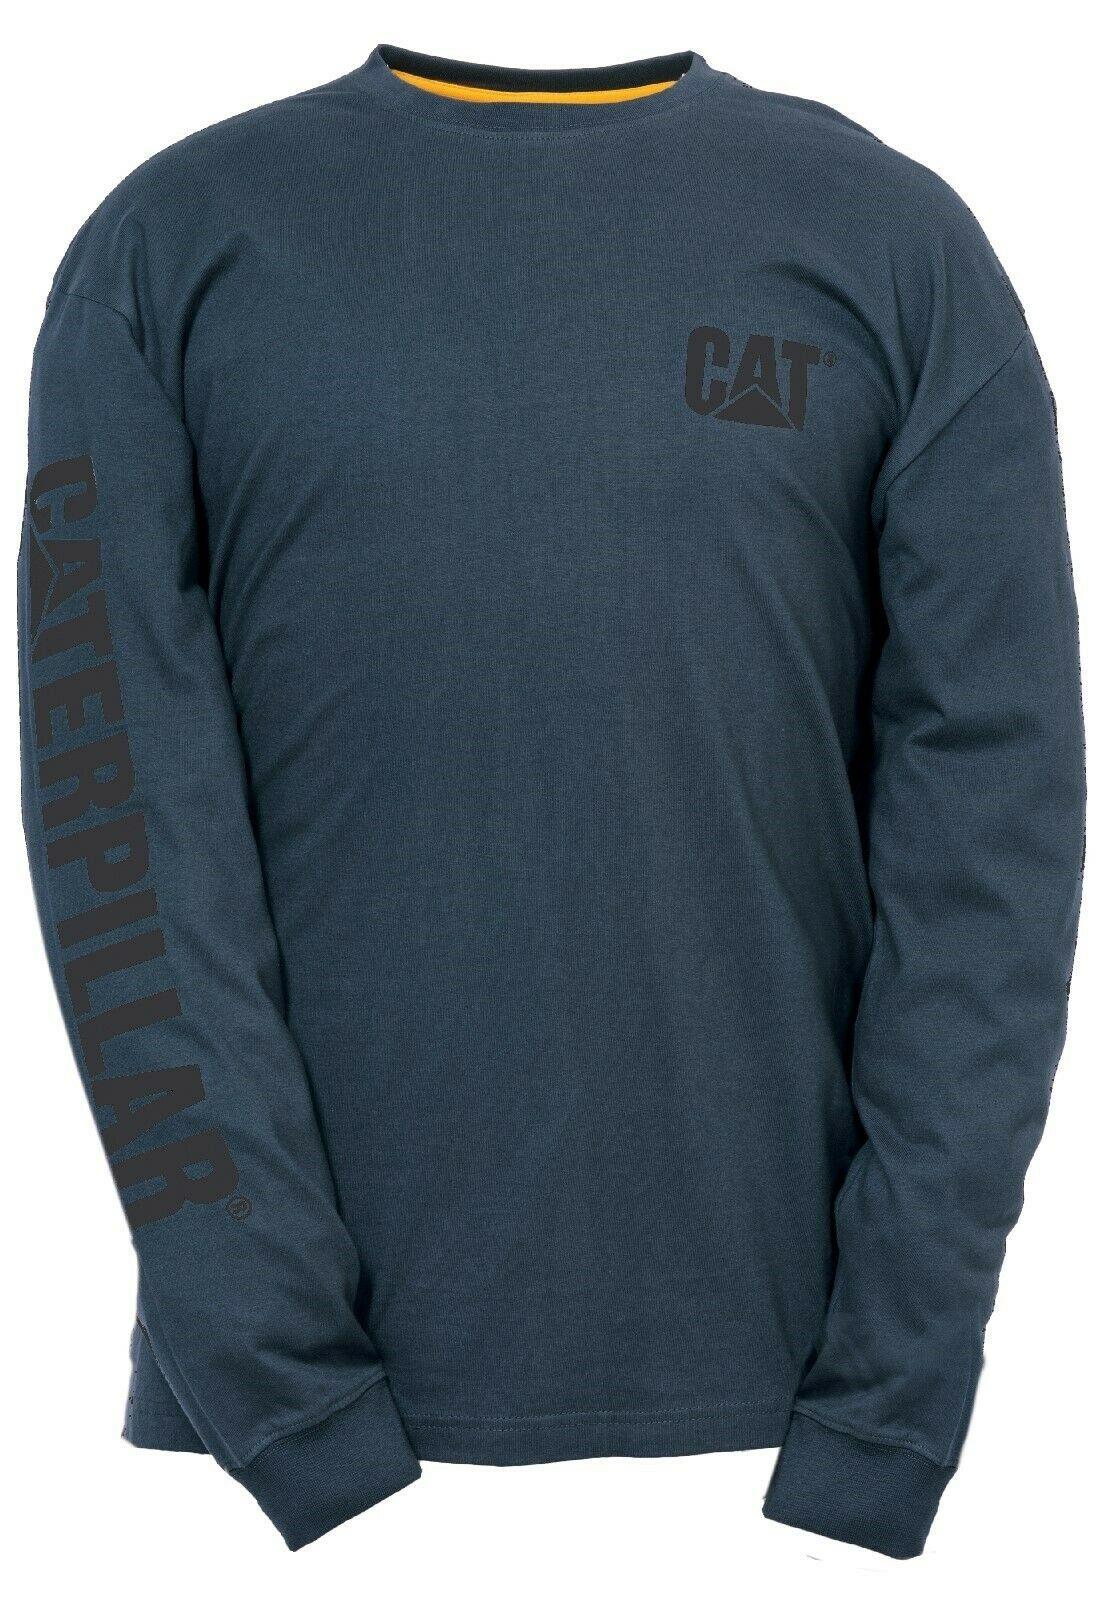 Caterpillar CAT Trademark Banner Tee marine navy cotton long-sleeve T-Shirt #1510034